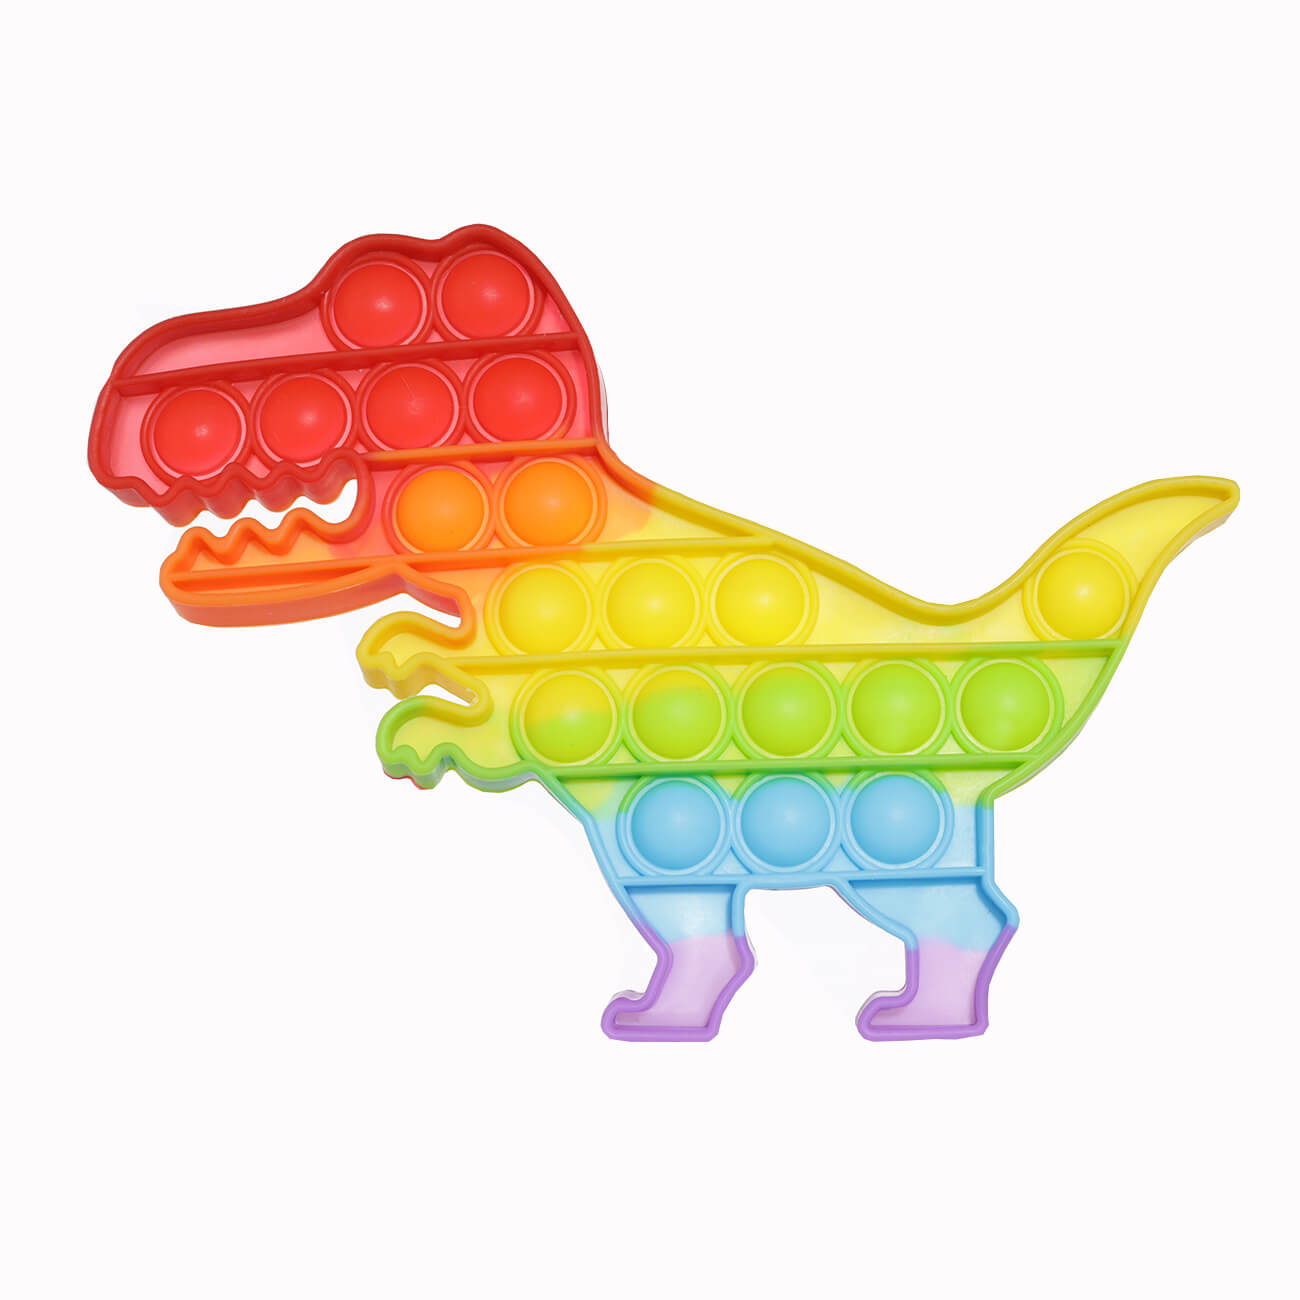 Игрушка-антистресс Pop-it, 19х14 см, силикон, цветная, Динозавр, Pop-it изображение № 1